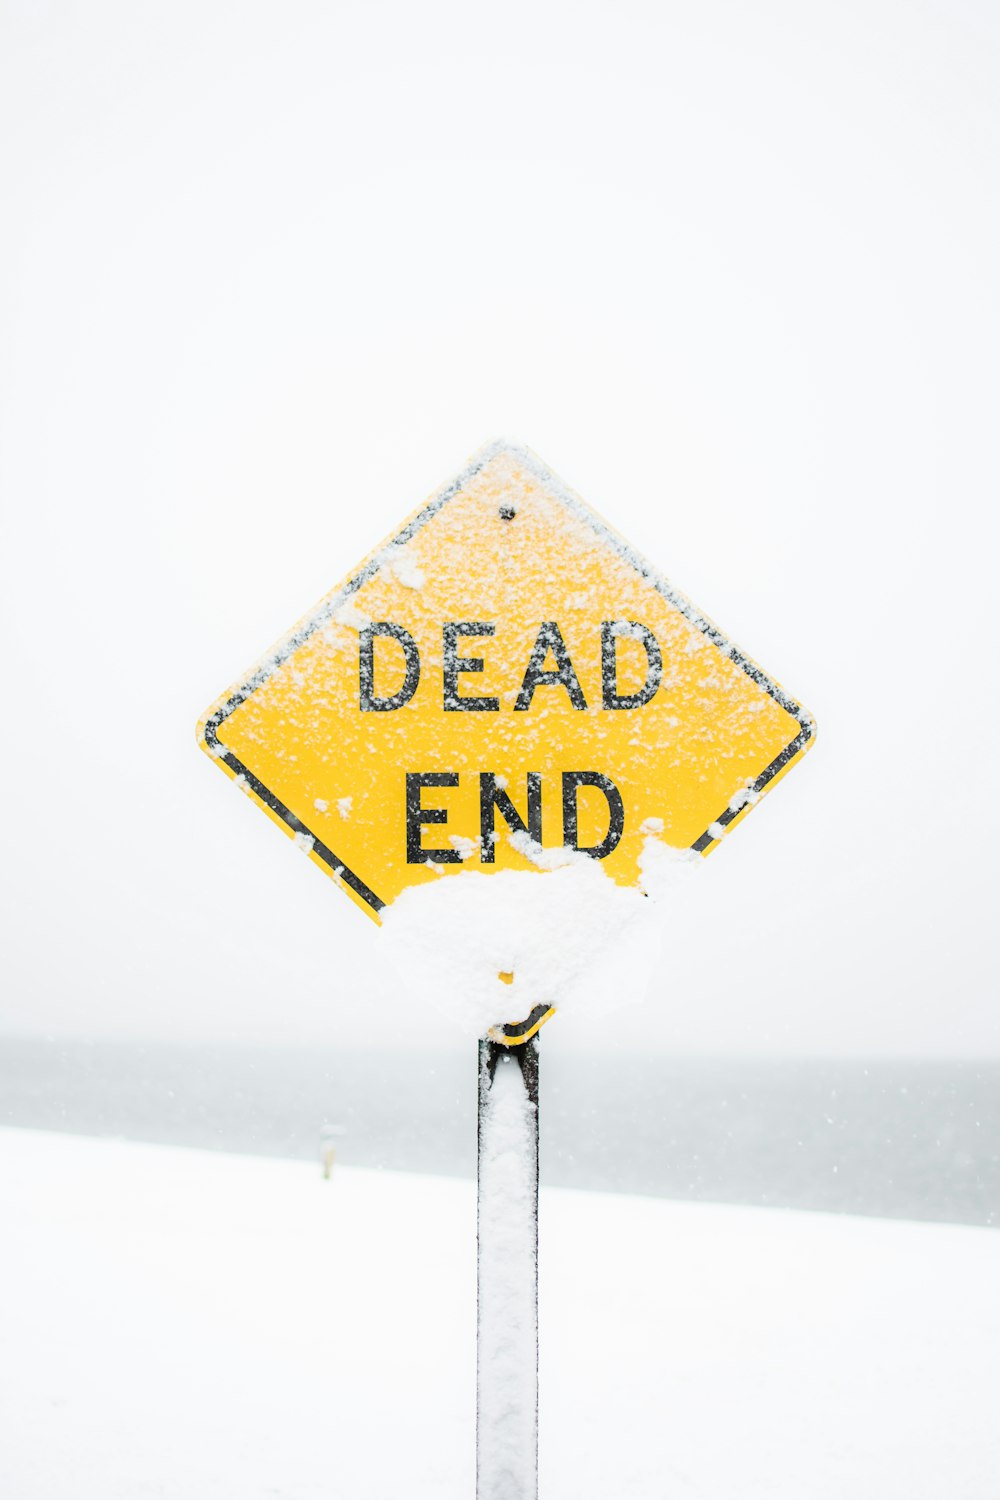 Fotografia de foco de sinal de estrada sem saída coberto de neve